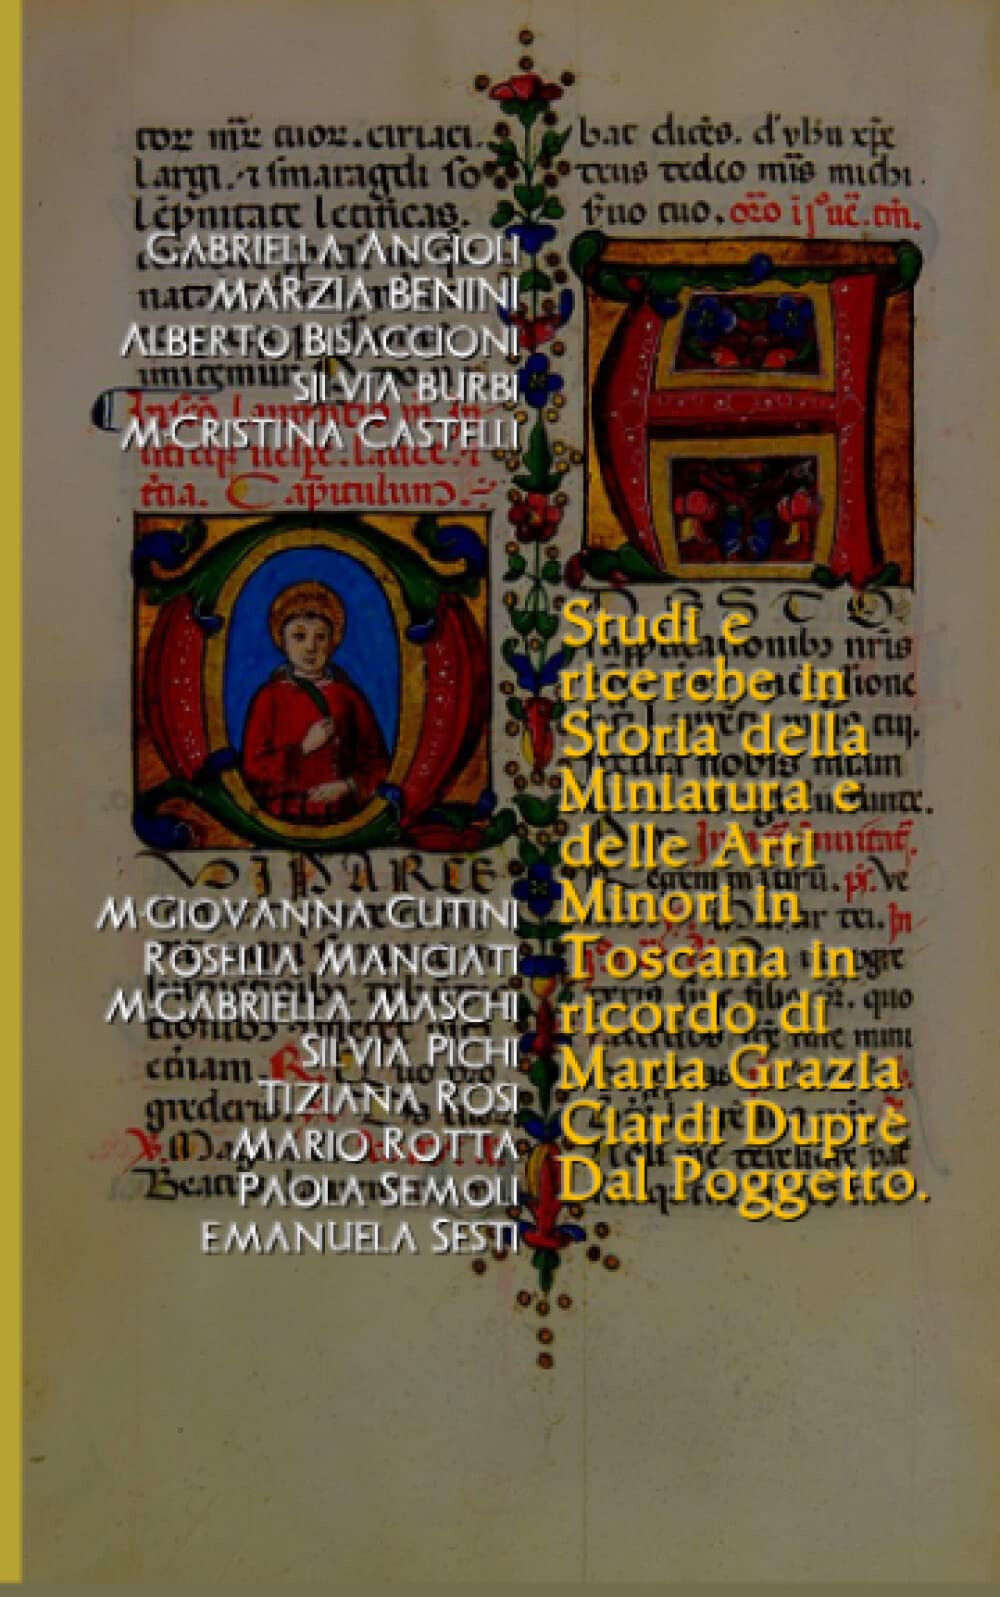 Studi e ricerche in Storia della Miniatura e delle Arti Minori in Toscana - 2022